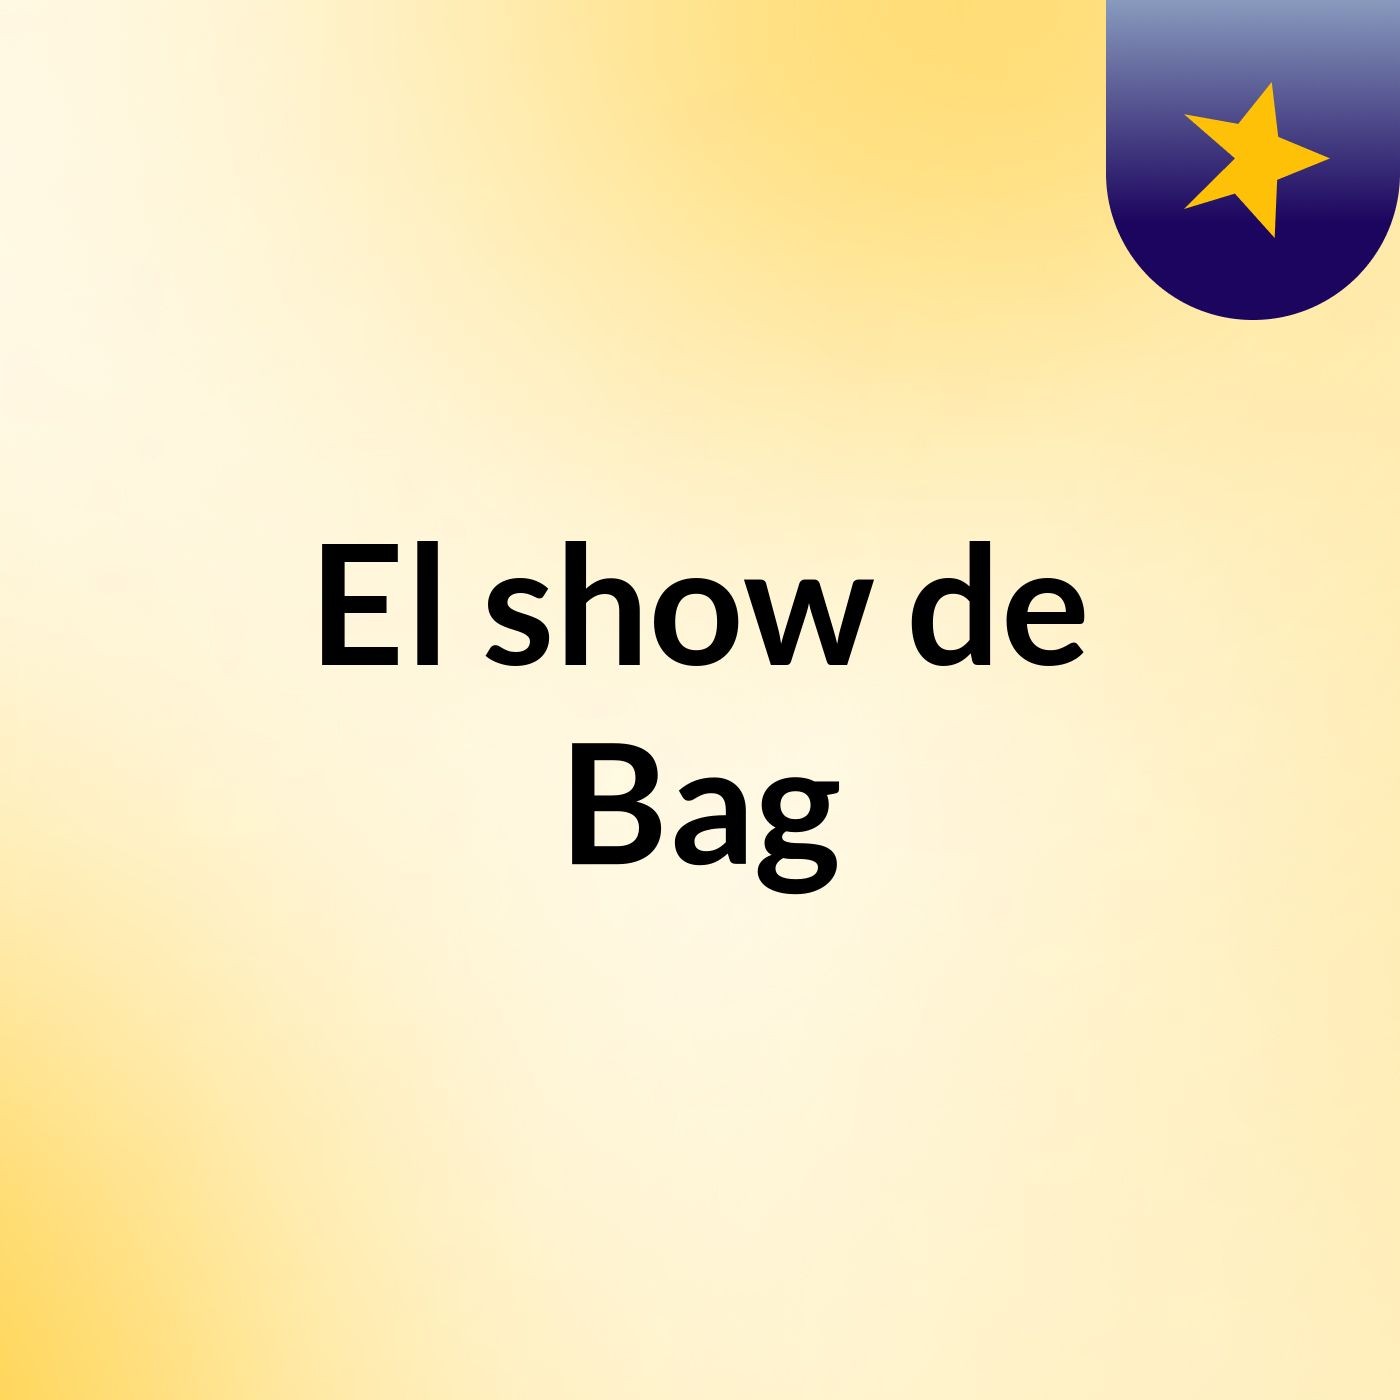 El show de Bag